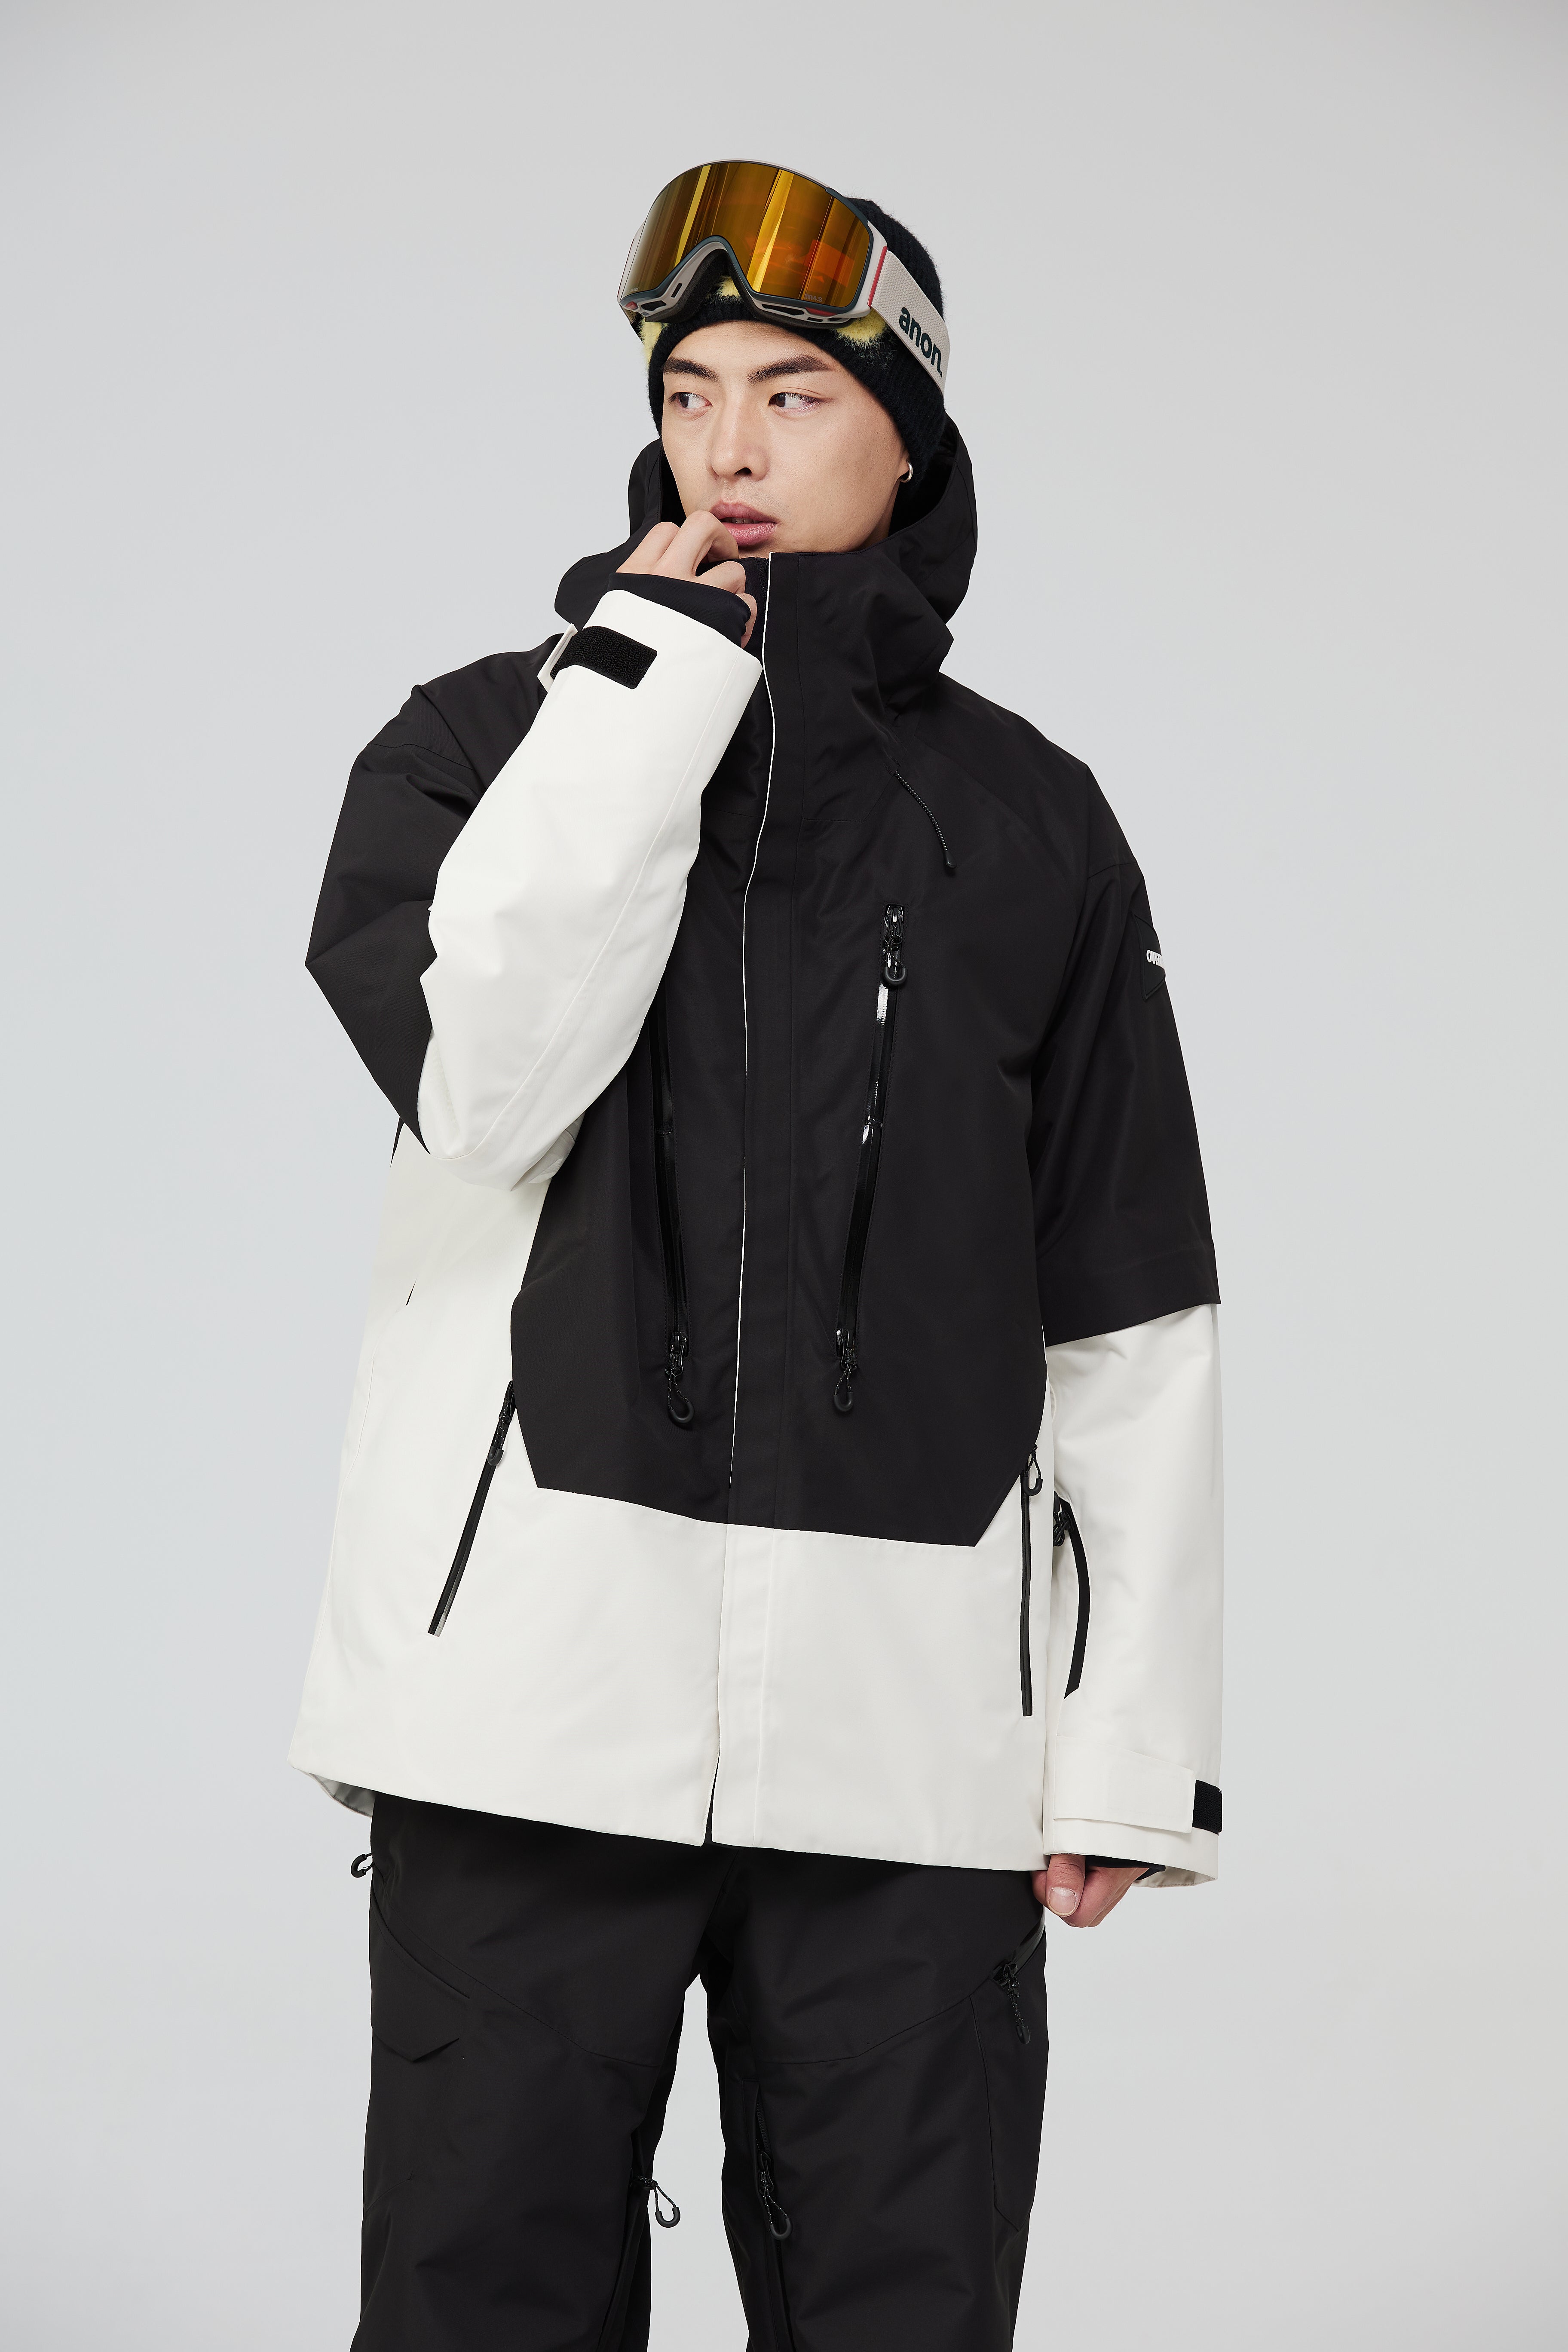 Brick Unisex Snowboarding Jacket